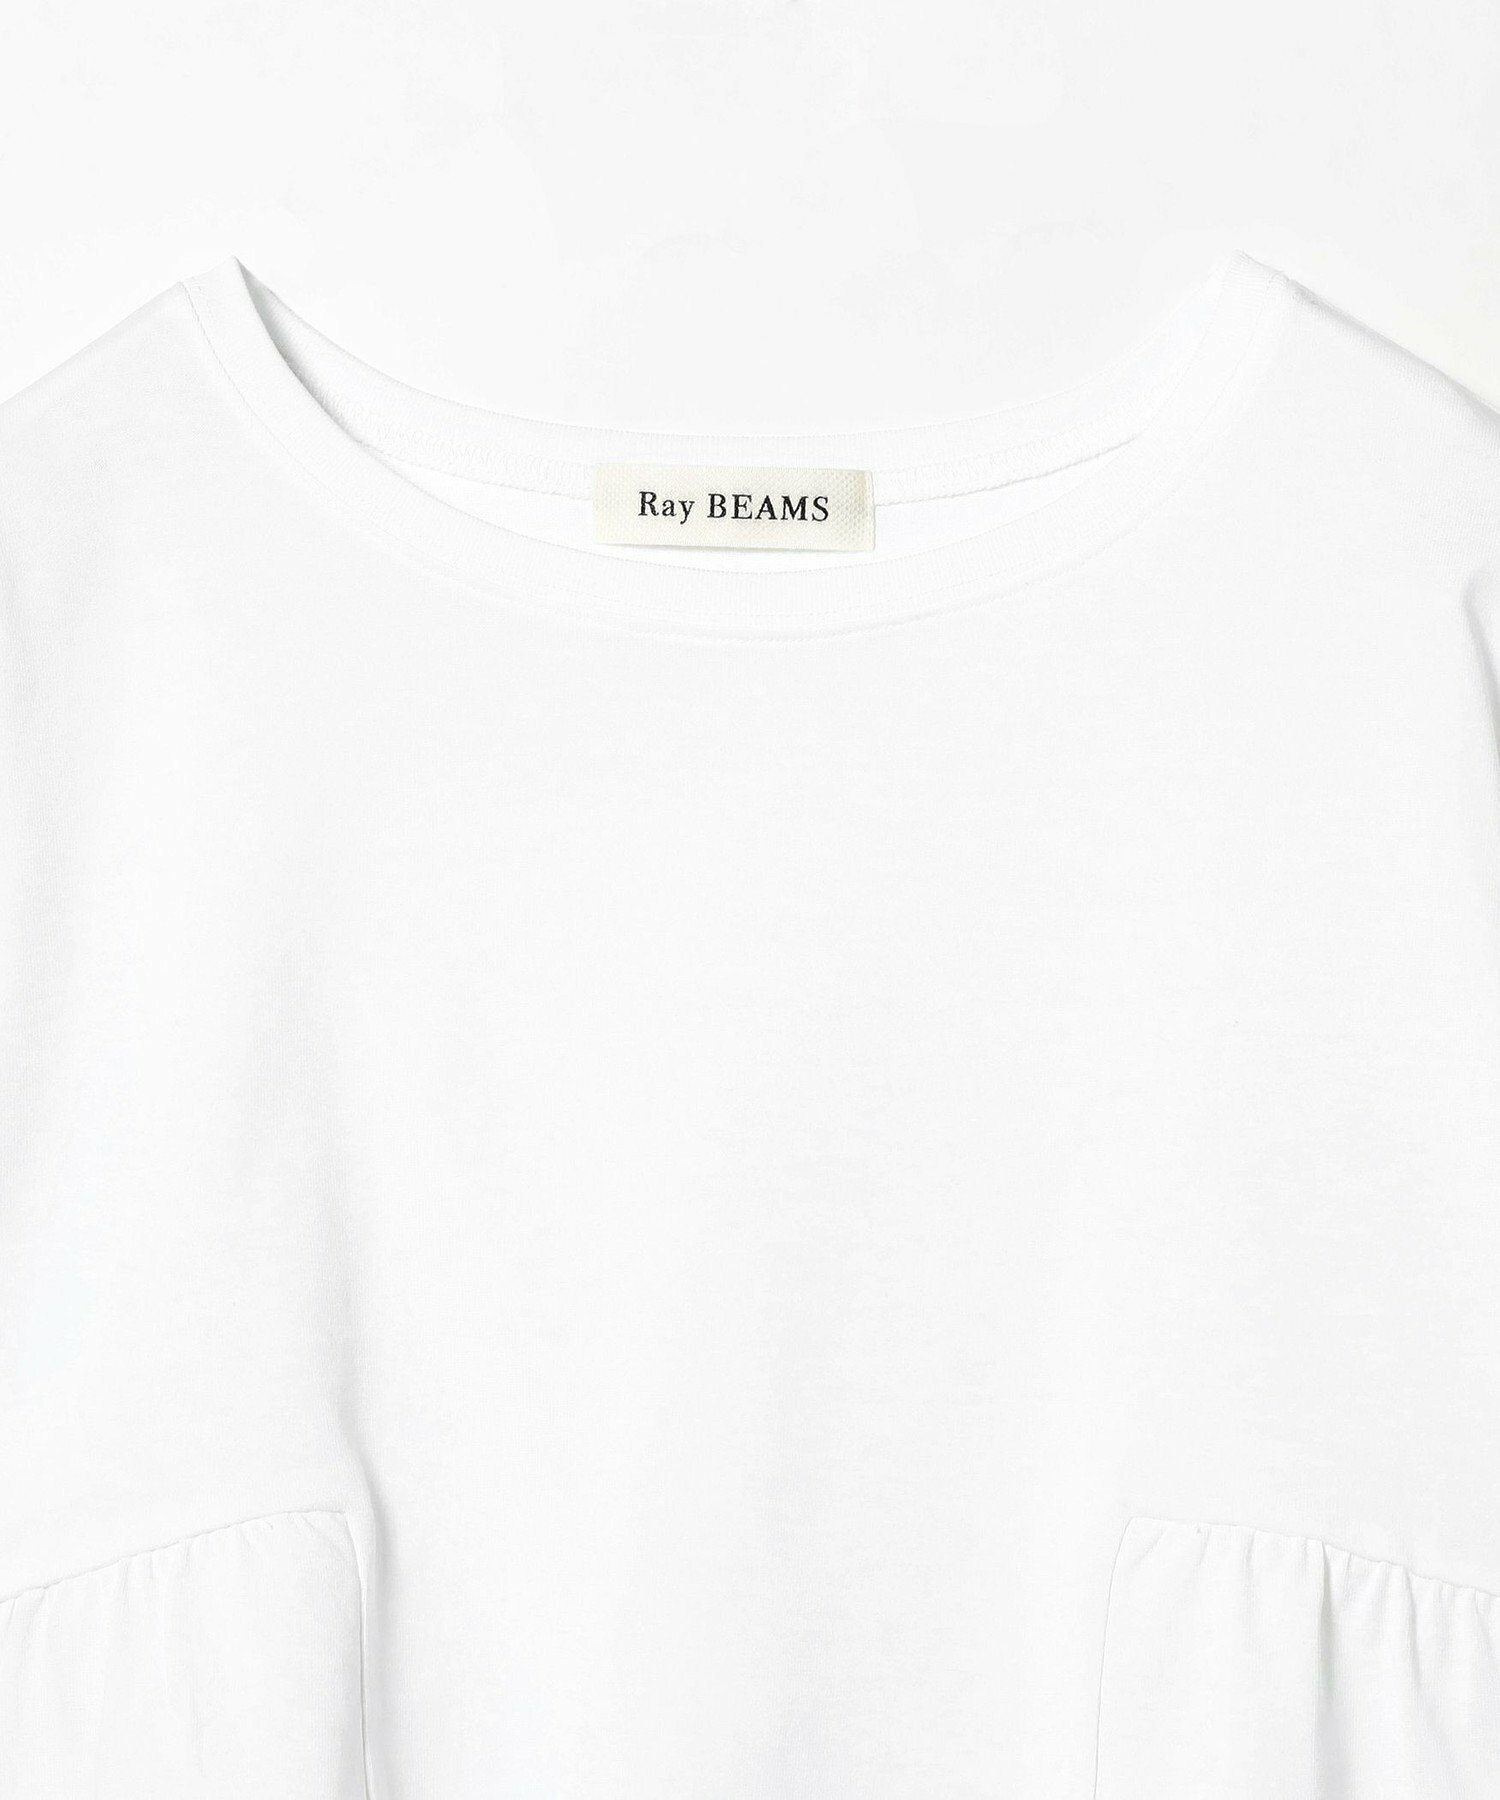 【洗濯機OK】Ray BEAMS / バックギャザー クルーネック Tシャツ 美シルエット 24SS イージーケア